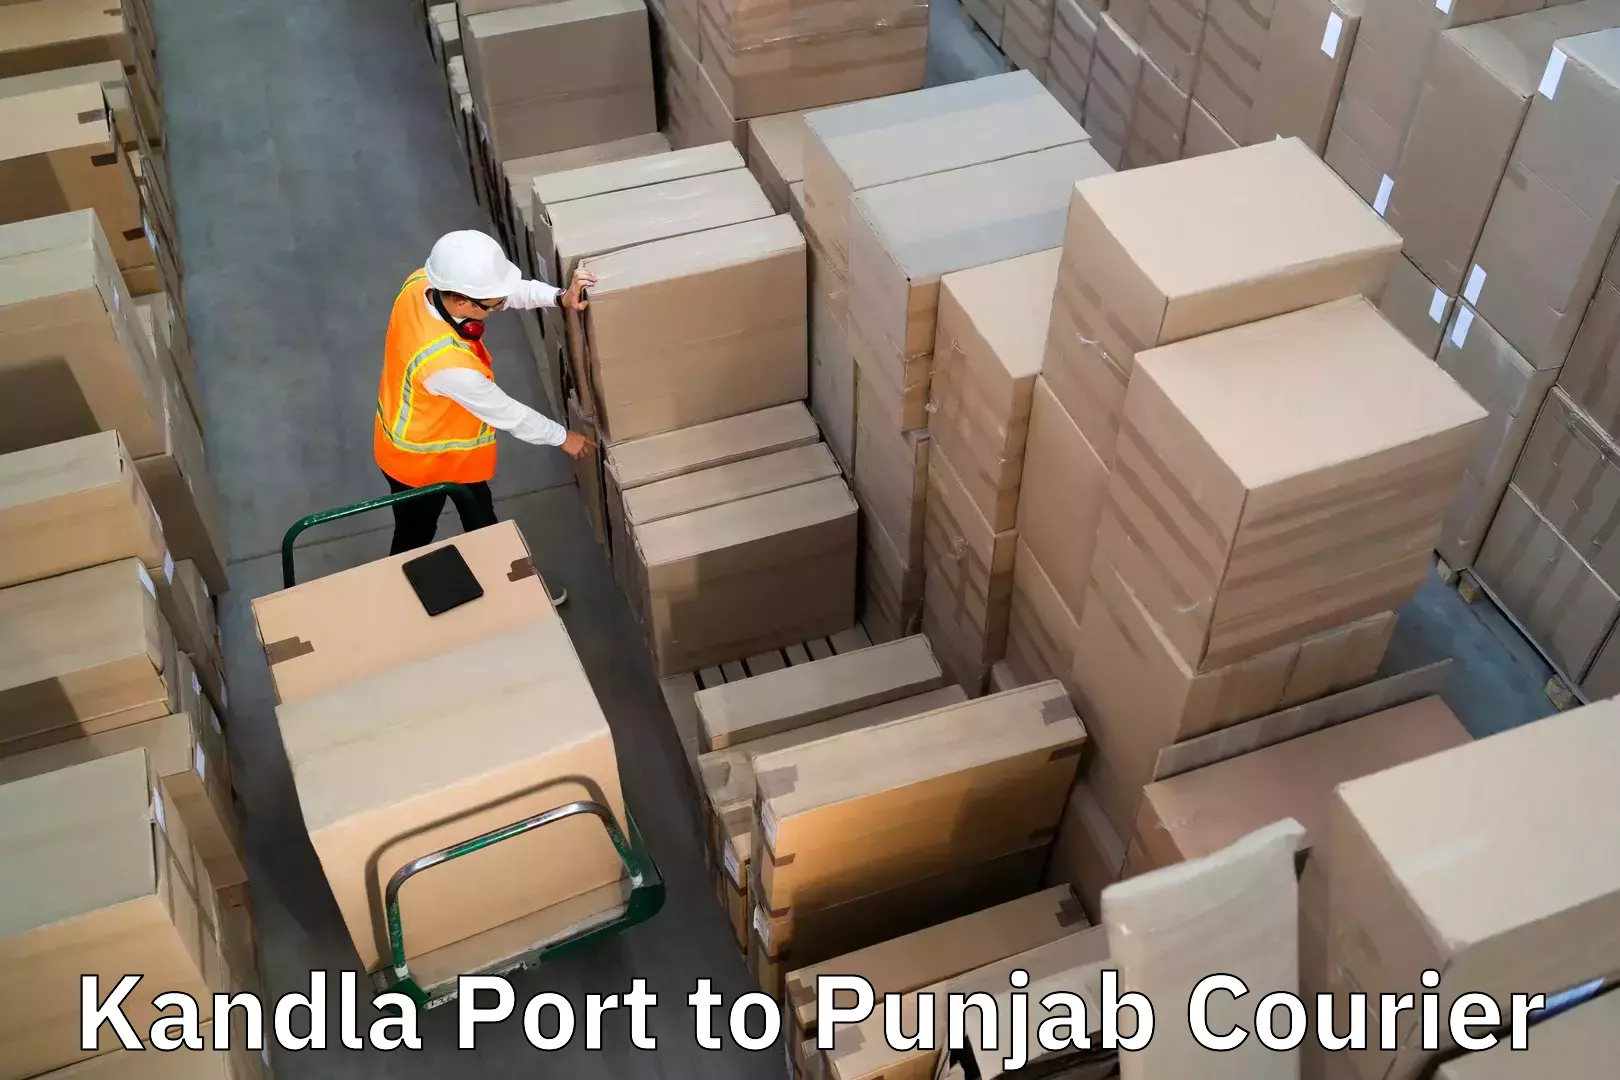 Luggage delivery optimization Kandla Port to Bathinda